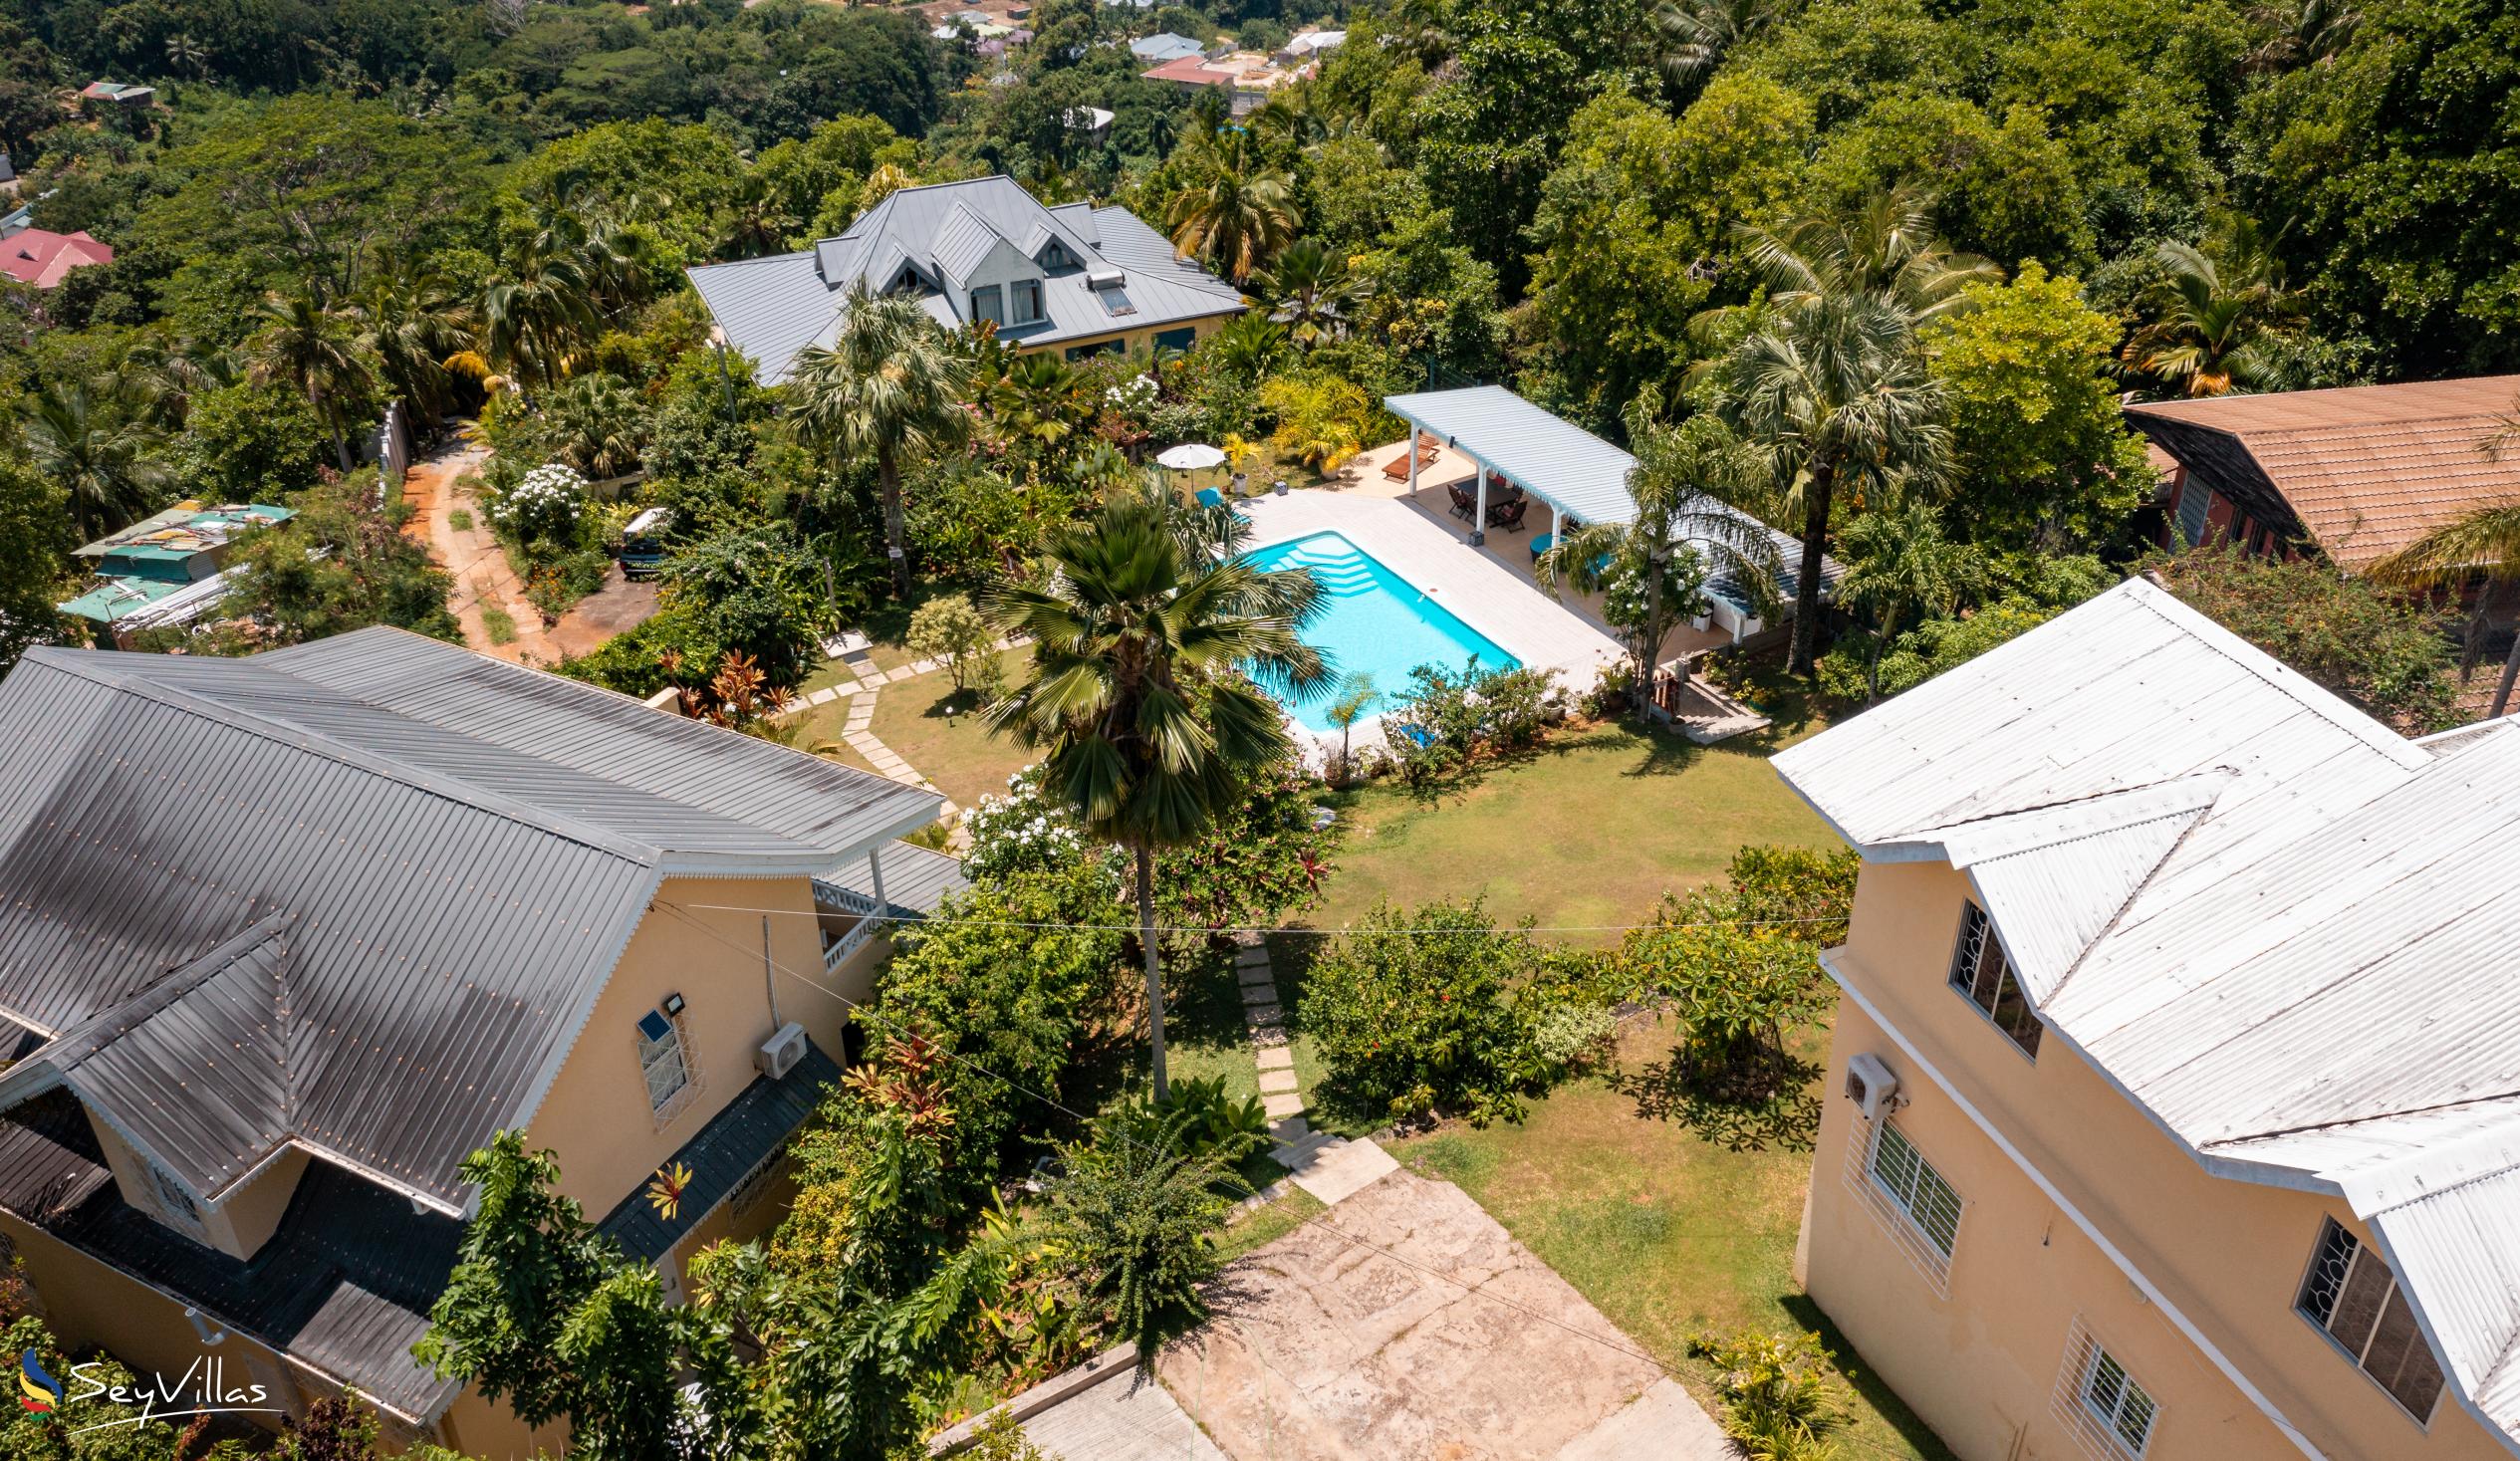 Foto 6: Residence Monte Cristo - Aussenbereich - Mahé (Seychellen)